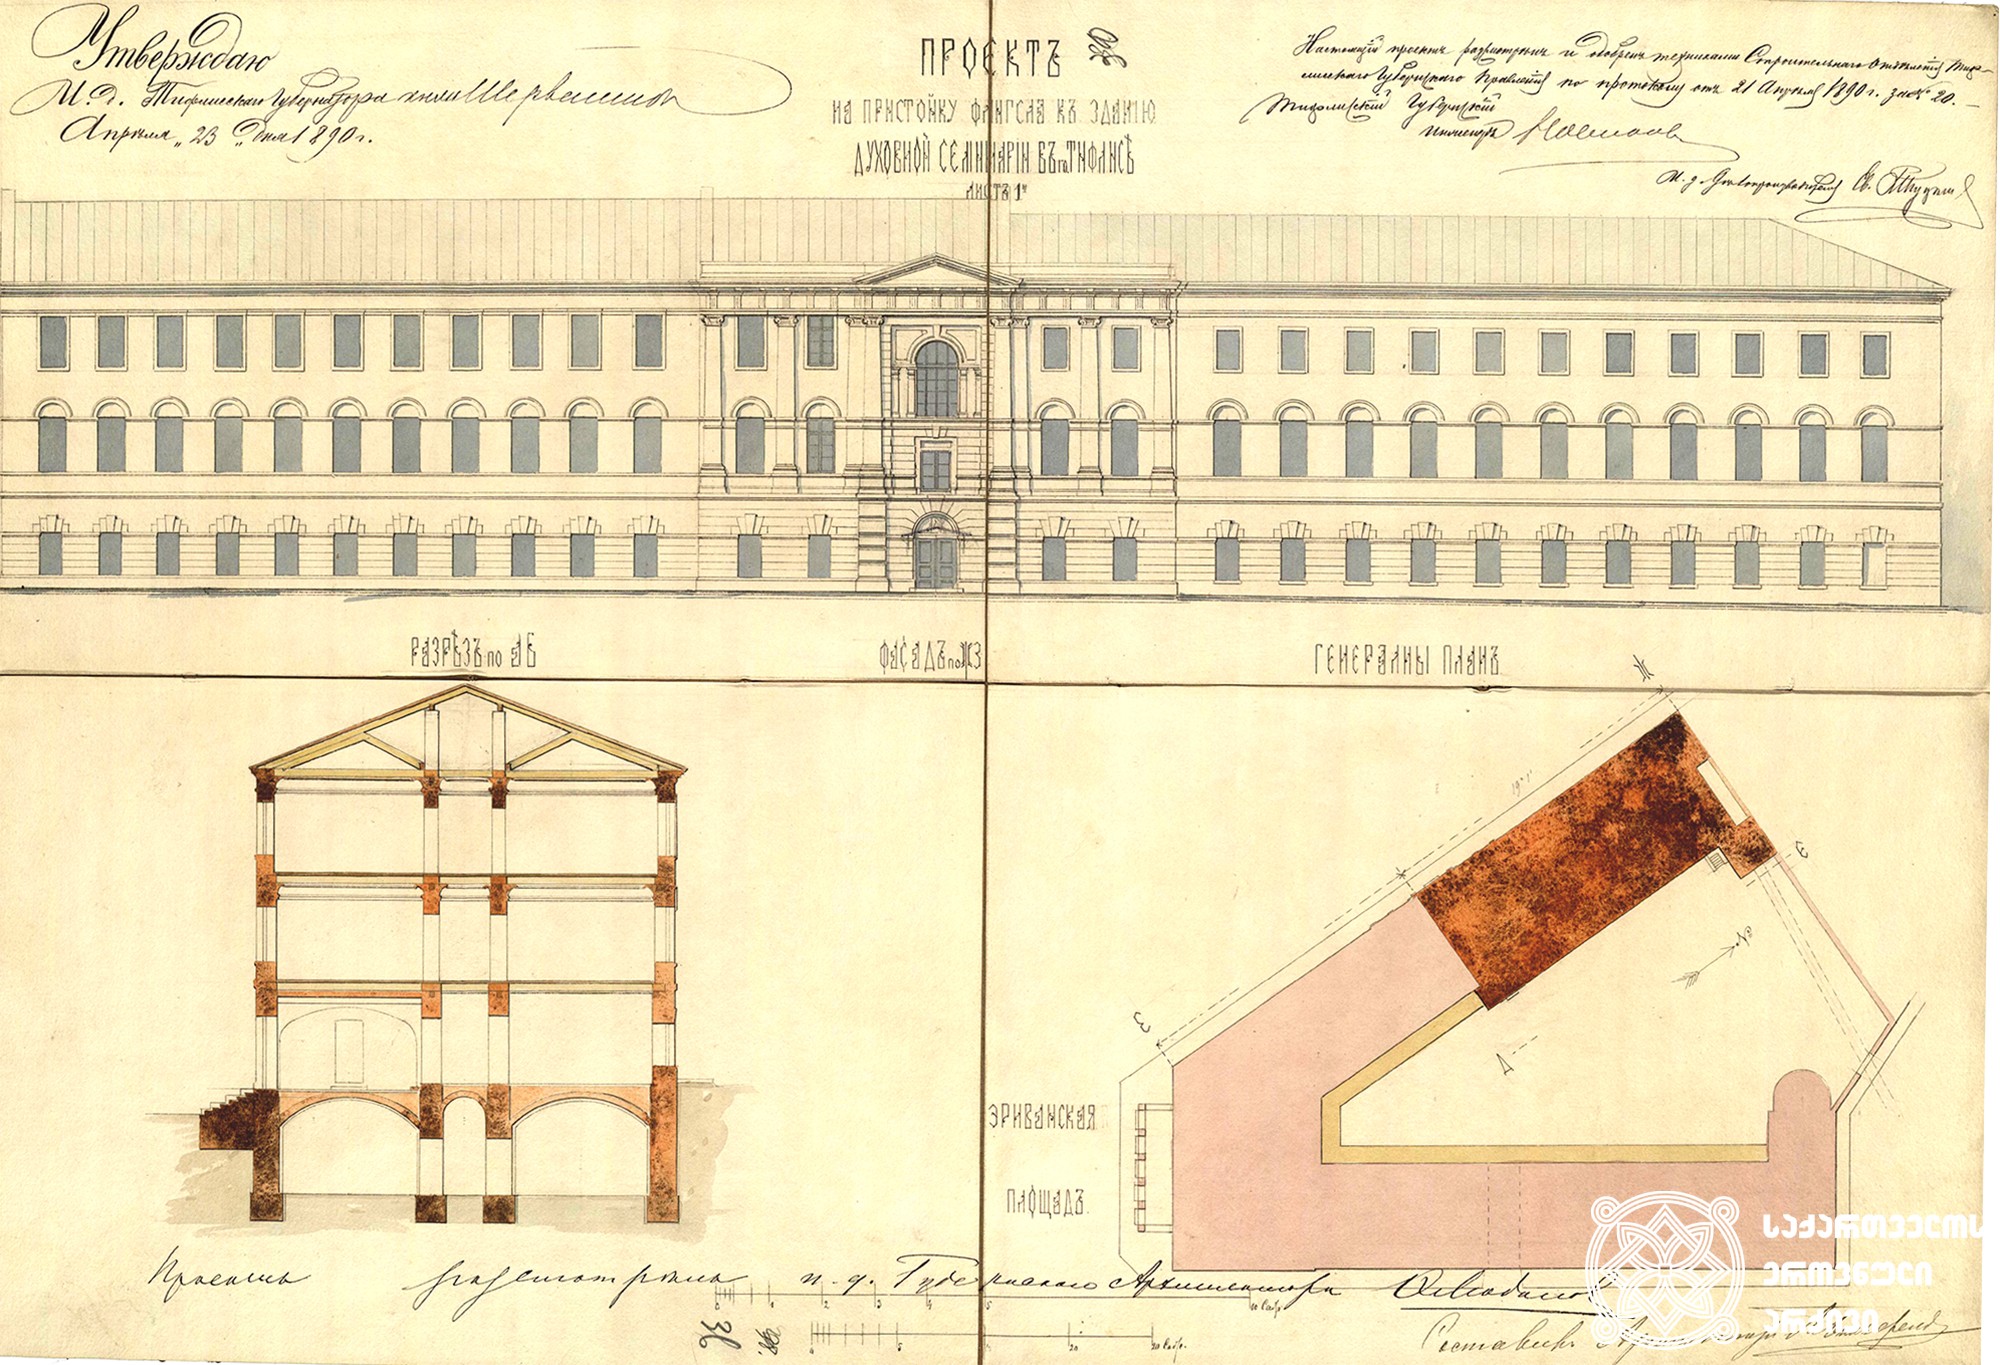 თბილისის სასულიერო სემინარიის შენობაზე ლორის-მელიქოვის (დღევანდელი ლადო გუდიაშვილის) ქუჩის მხრიდან ფლიგელის მიშენების პროექტი. <br>
პროექტი განხილული და დადასტურებული იყო თბილისის საგუბერნიო მმართველობის სამშენებლო განყოფილების ტექნიკოსების მიერ 1890 წლის 21 აპრილის #20 ოქმით. ხელს აწერდნენ საგუბერნიო ინჟინერი და საქმის მწარმოებელი. პროექტს 1890 წლის 23 აპრილს ამტკიცებს თბილისის გუბერნატორის ტექნიკოსი შერვაშიძე. მიშენების პროექტის ავტორი გახლდათ თბილისში არაერთი შენობის ავტორი, არქიტექტორი - ლეოპოლდ ბილფელდი.